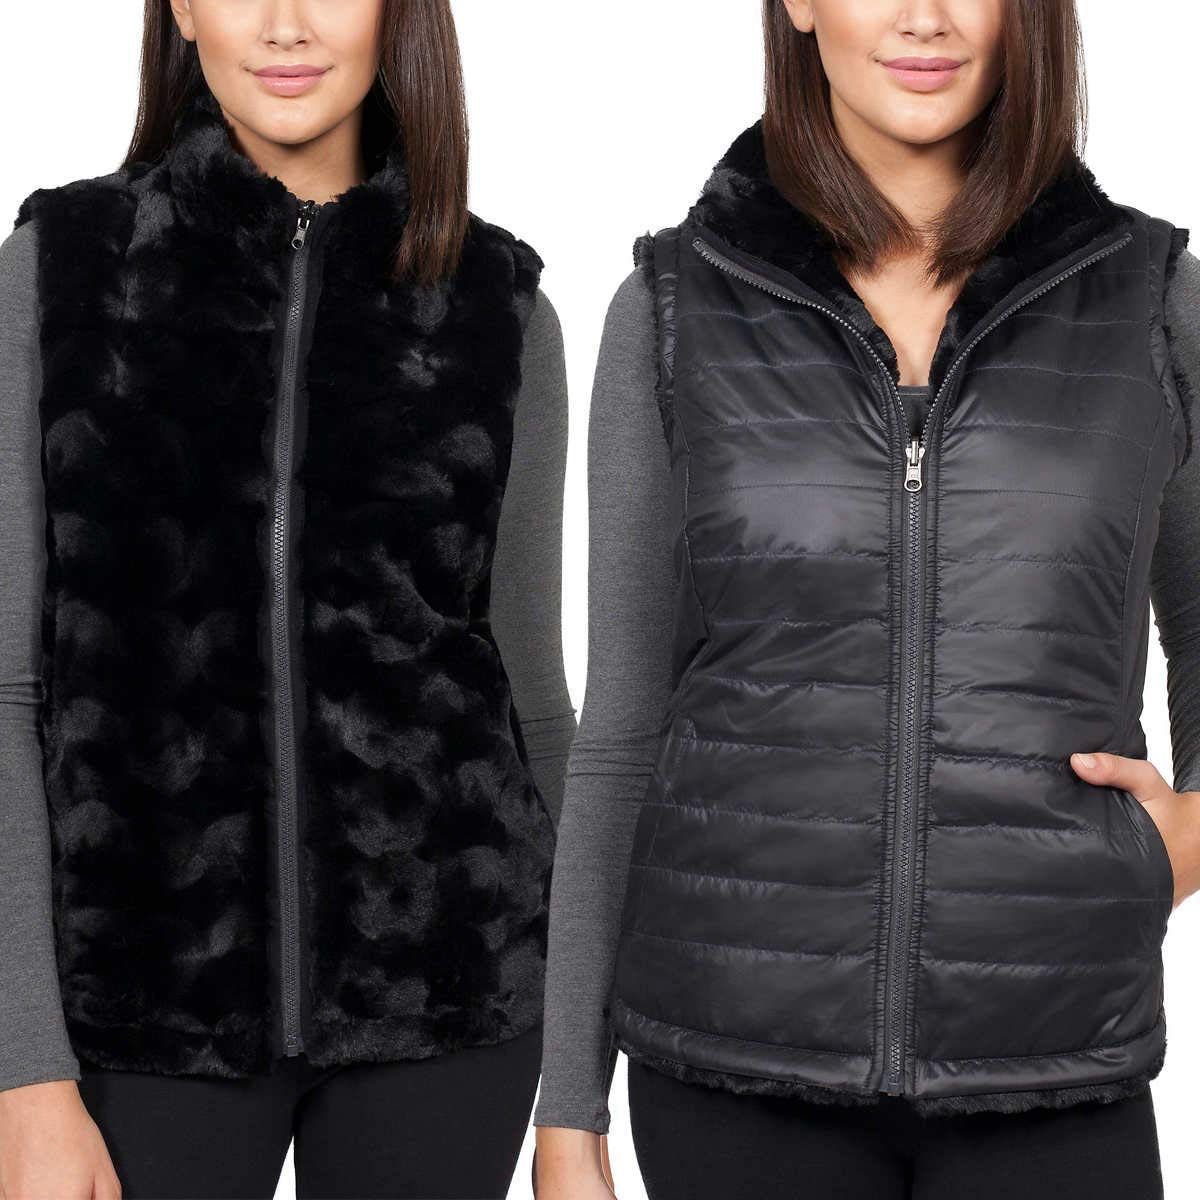 Nicole Miller Women's Reversible Faux Fur Vest - Luxurious and Versatile Fashion Essential